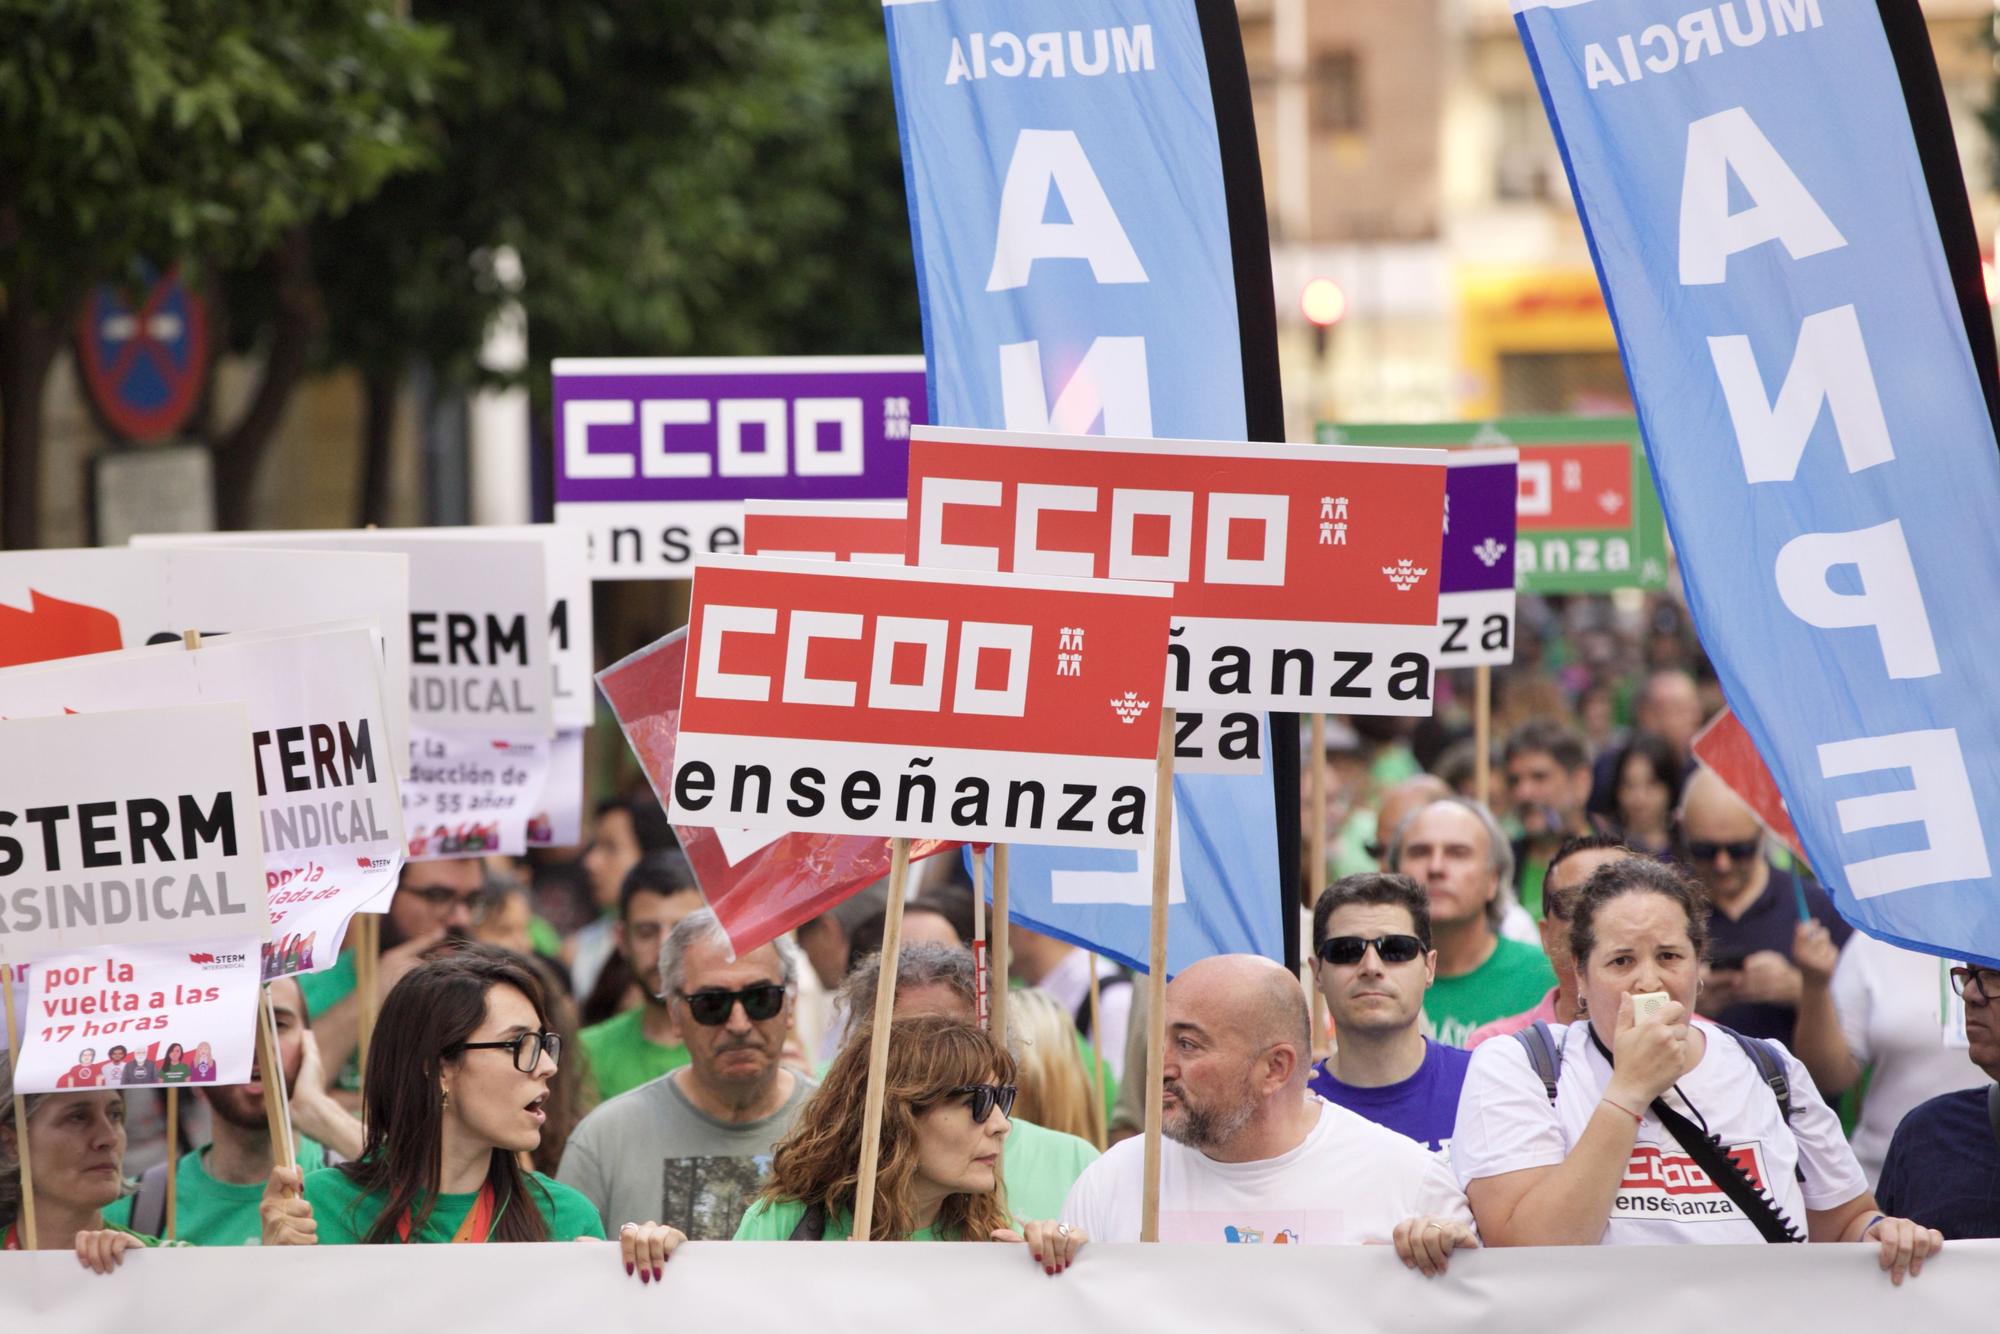 Manifestación en defensa de la educación pública en Murcia